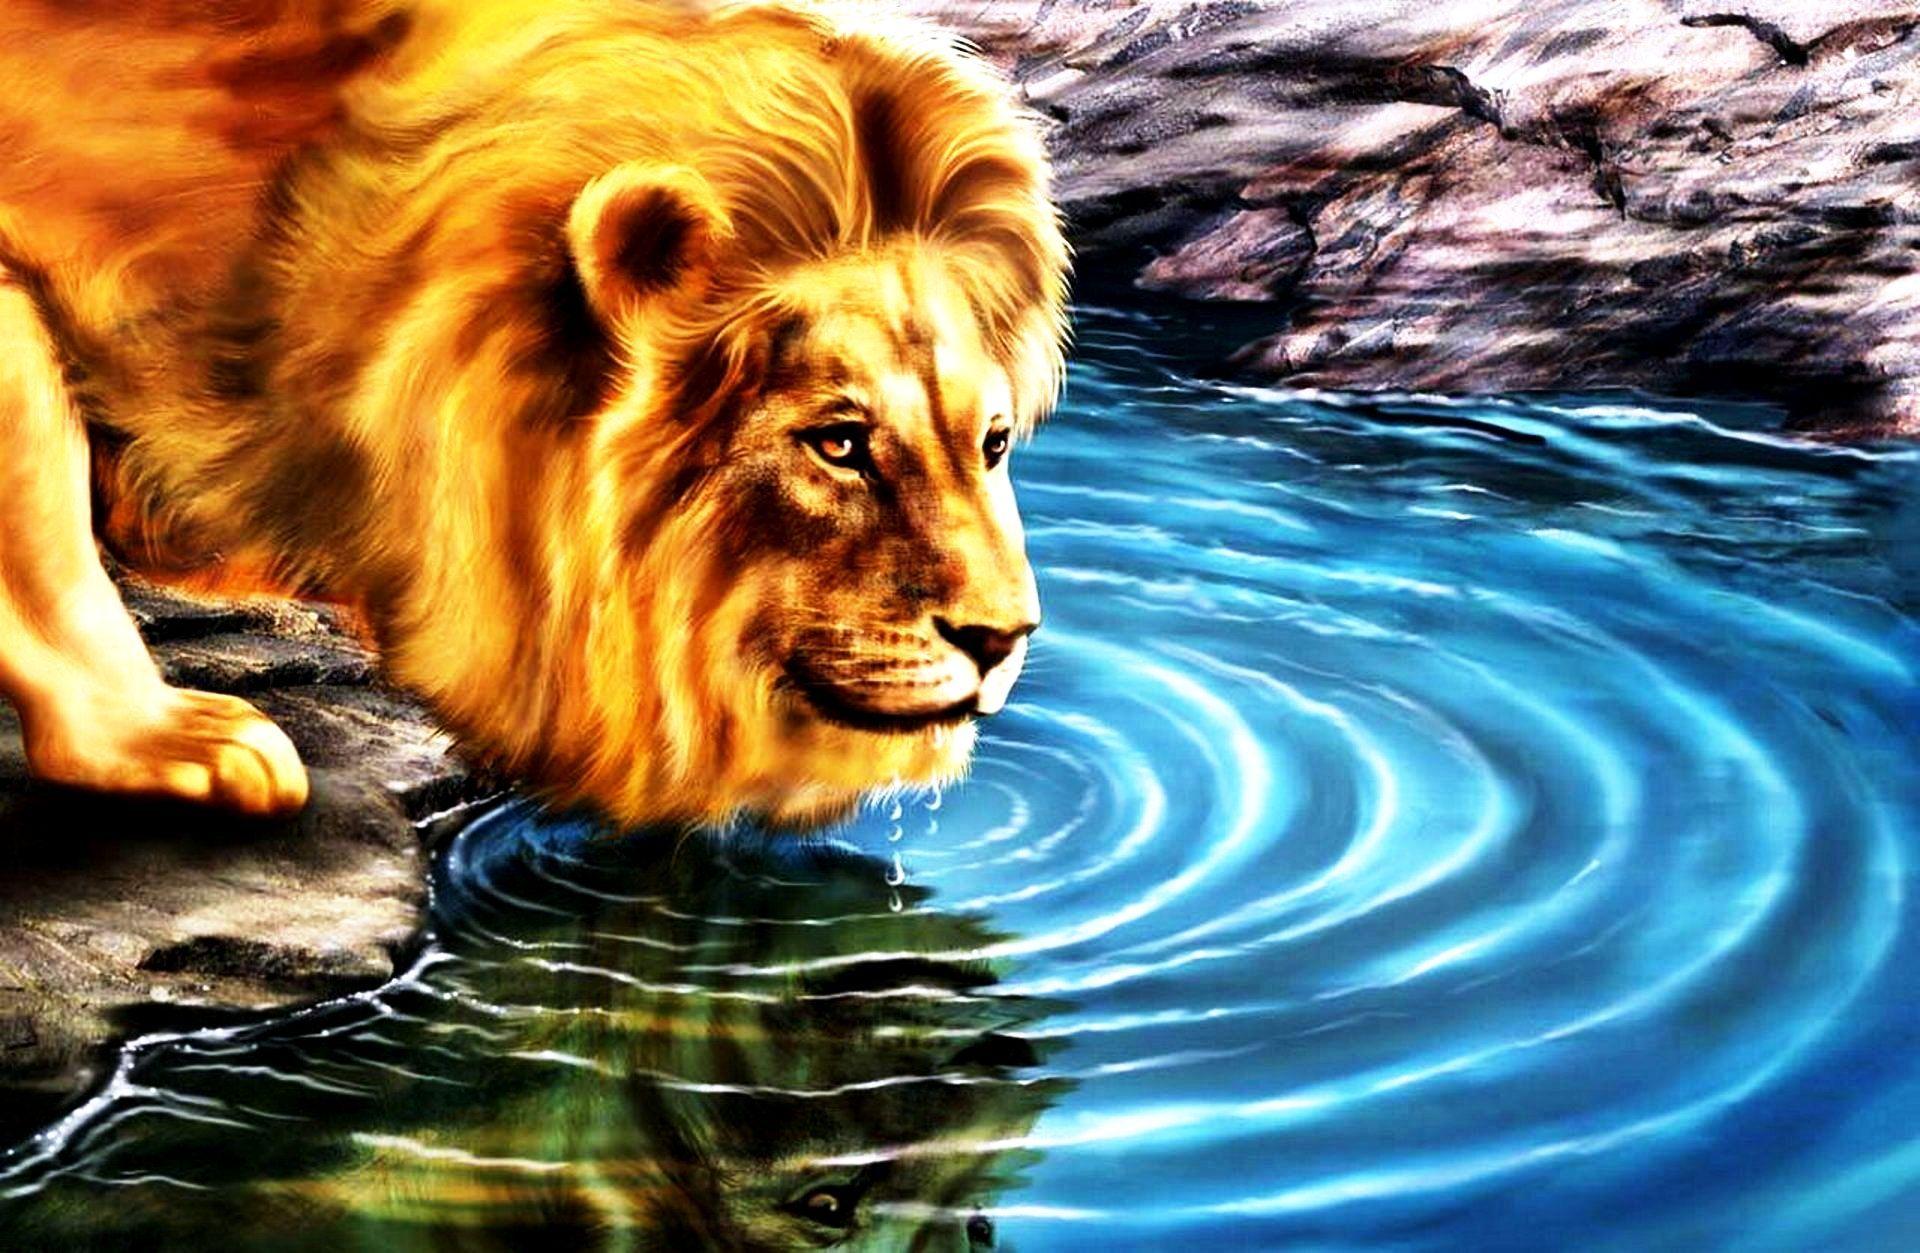 Lion 3D Wallpaper Images